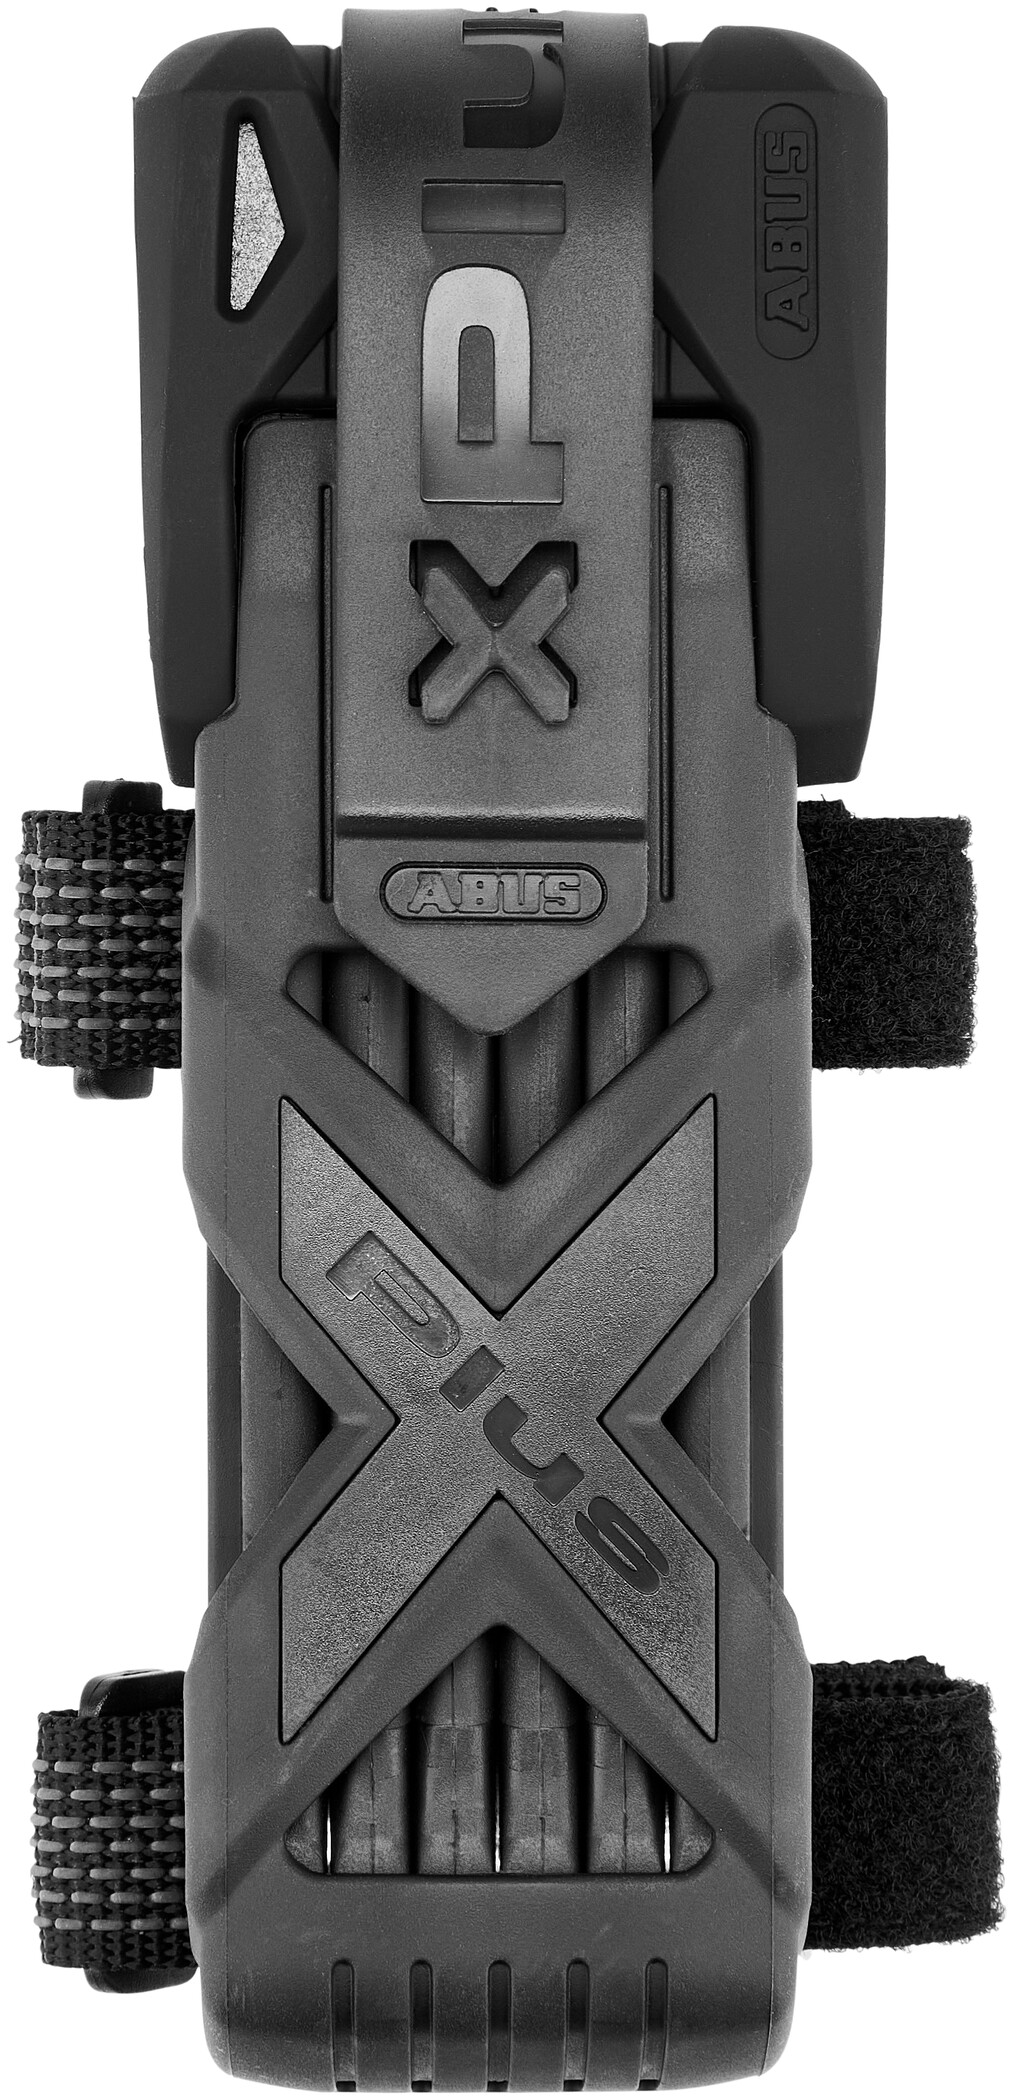 ABUS Bordo Granit X Plus 6500 à Clé Antivol pliable 85 cm noir livraison gratuite! 